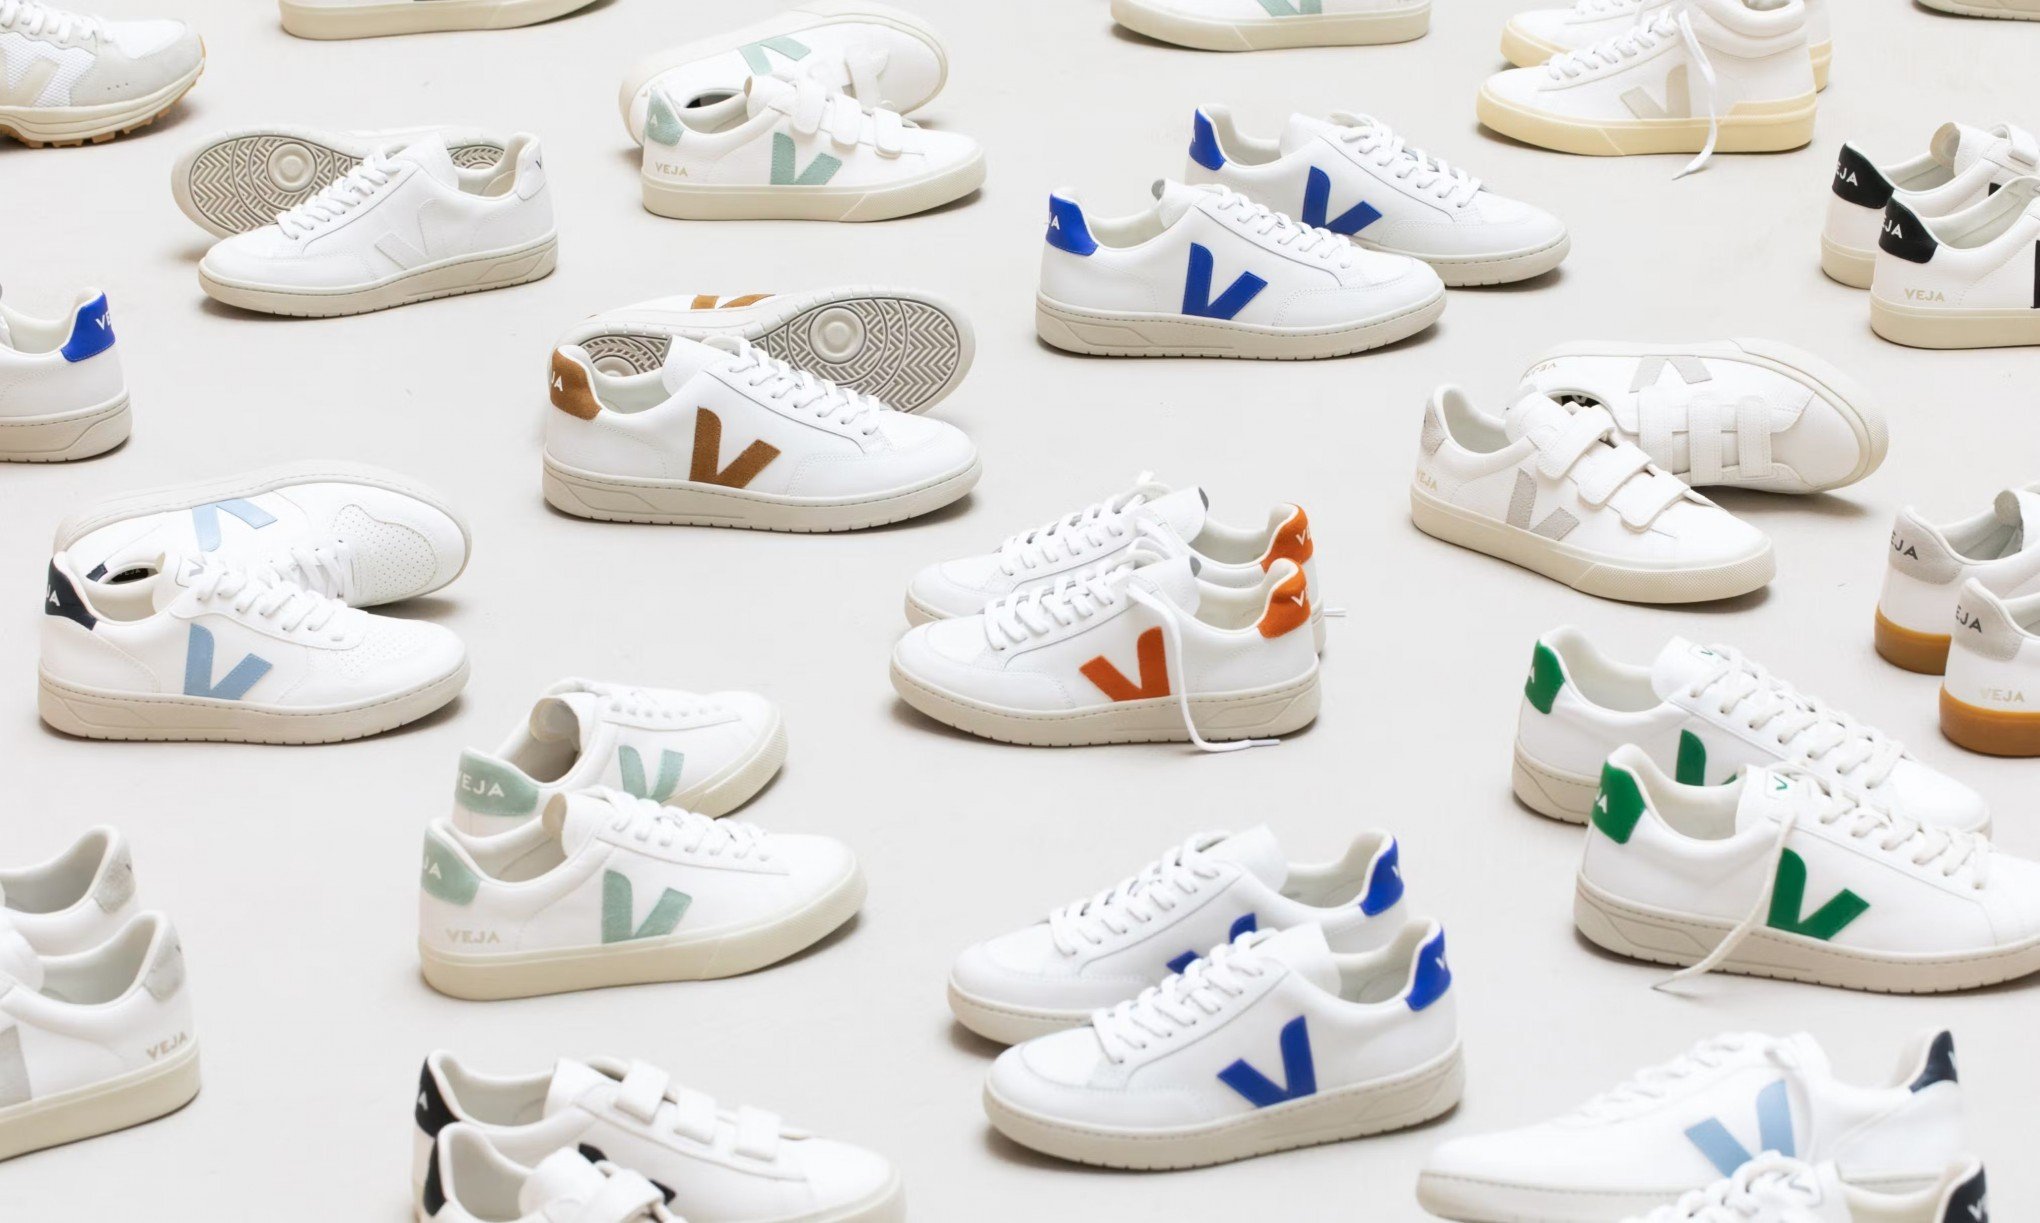 Veja segue sendo uma das marcas de calçados mais copiadas no Brasil